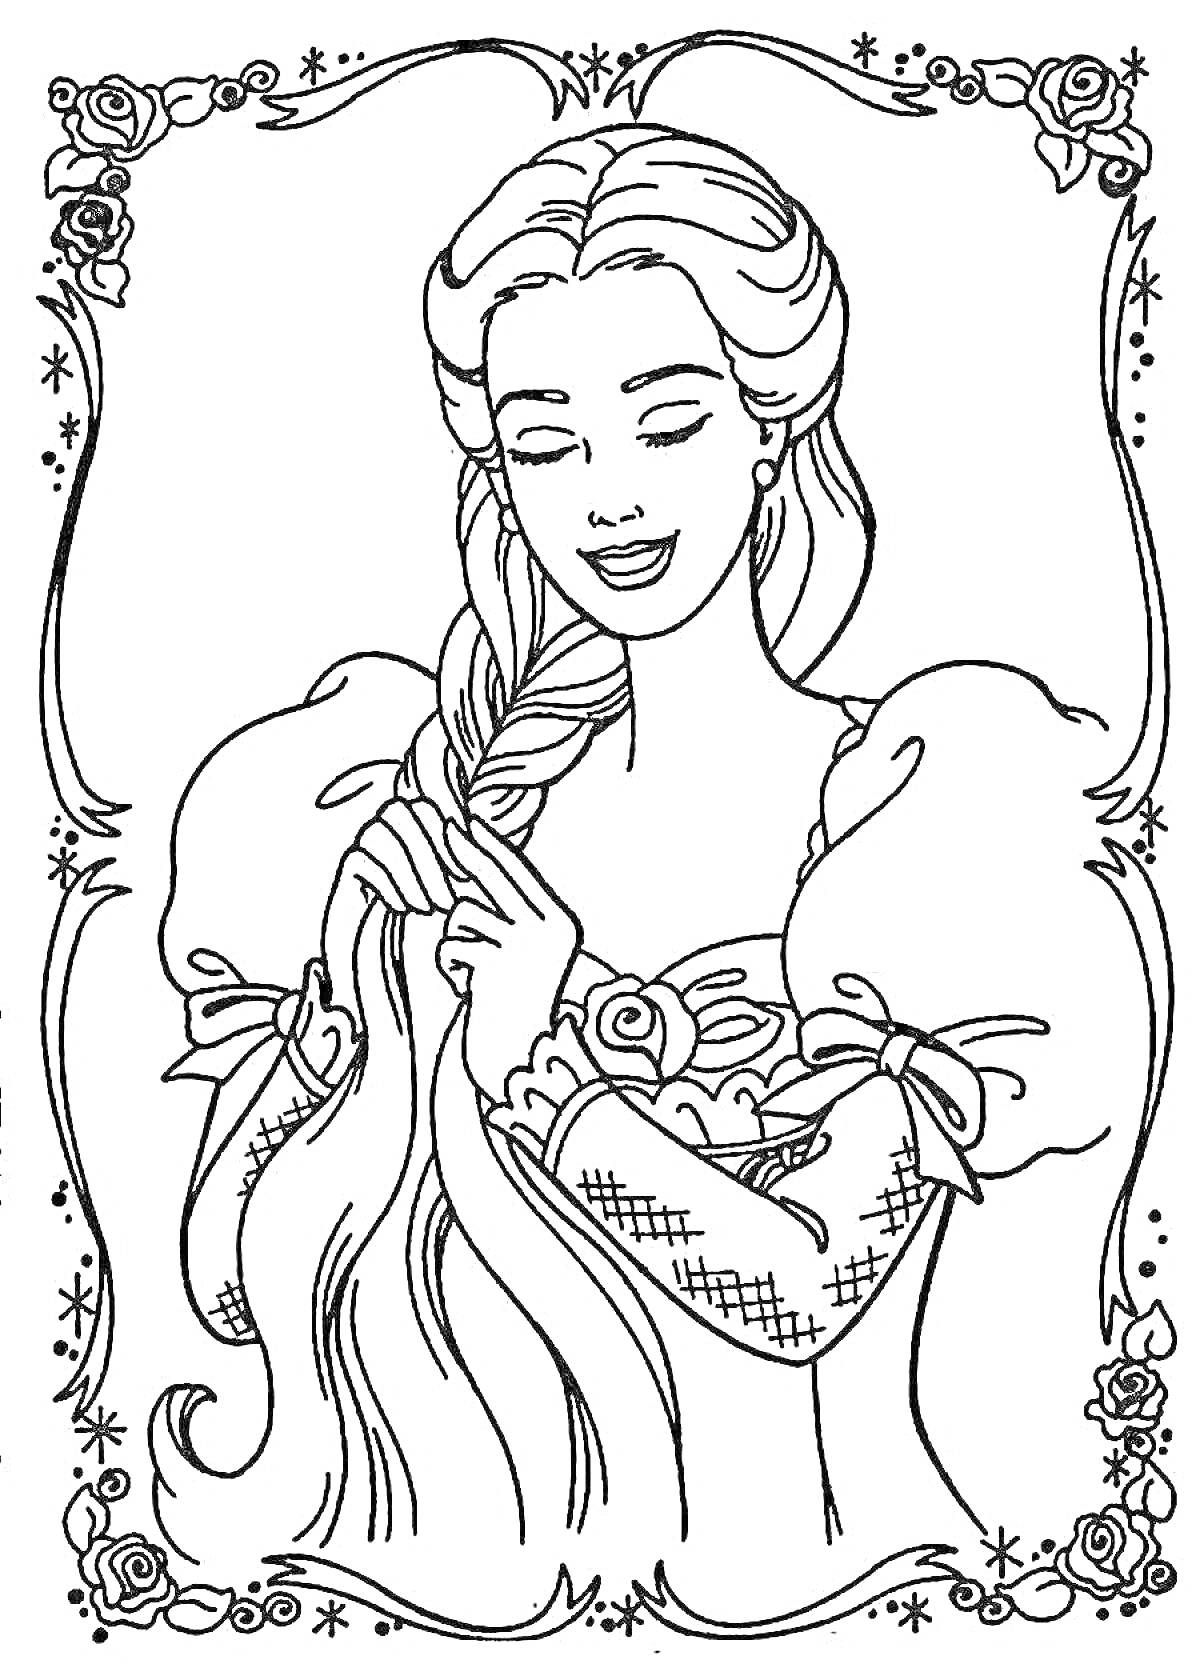 Раскраска Девушка с длинной косой в платье с пышными рукавами на фоне рамки с цветочным орнаментом